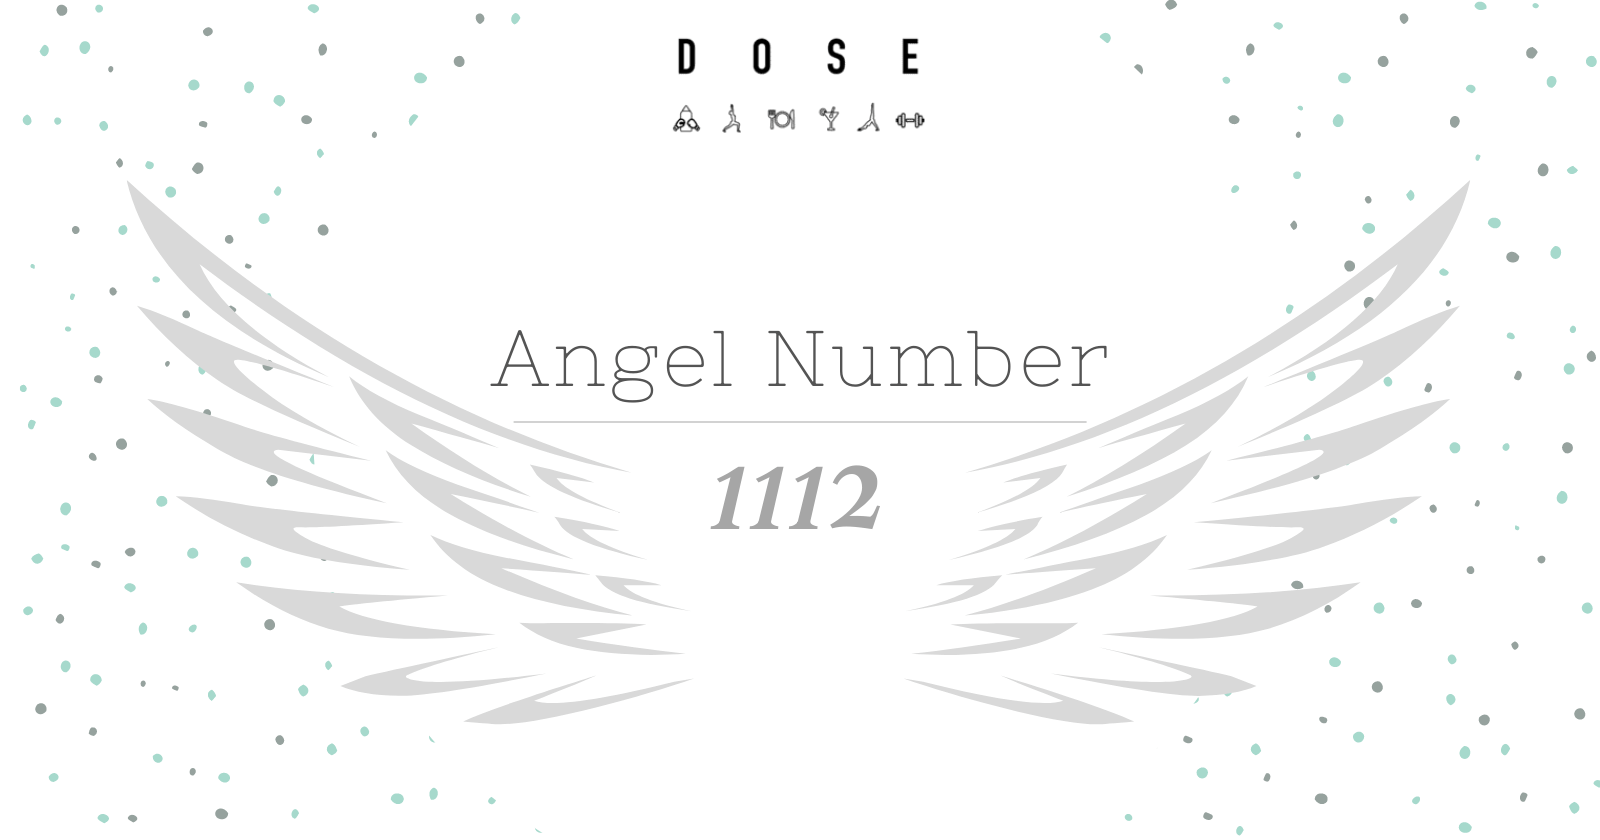 Angel Number 1112